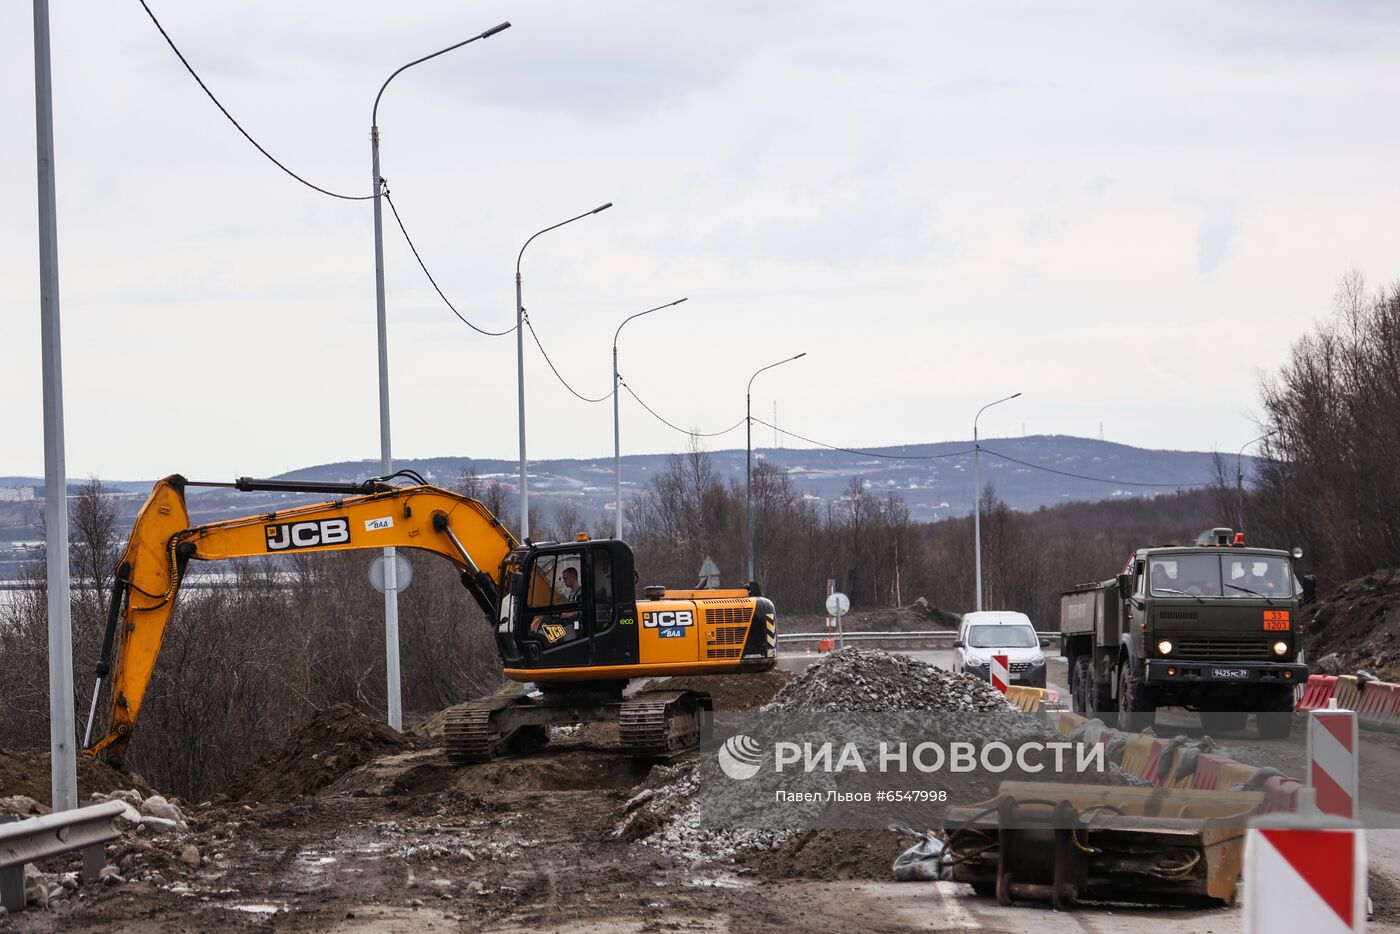 Реконструкция федеральной трассы Р-21 "Кола"